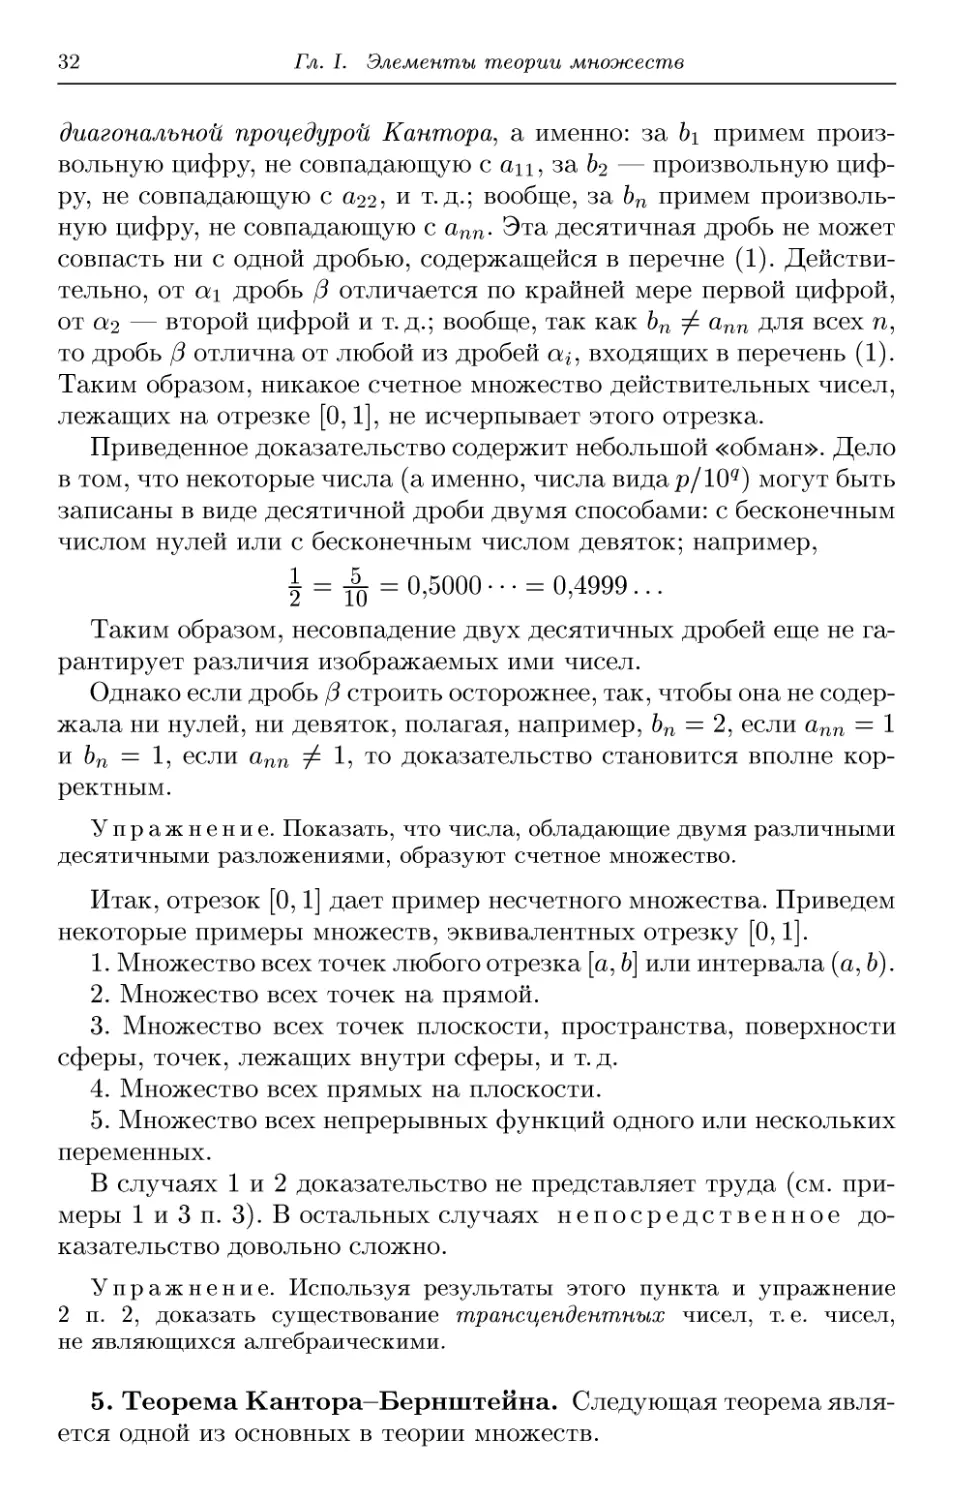 5. Теорема Кантора-Бернштейна